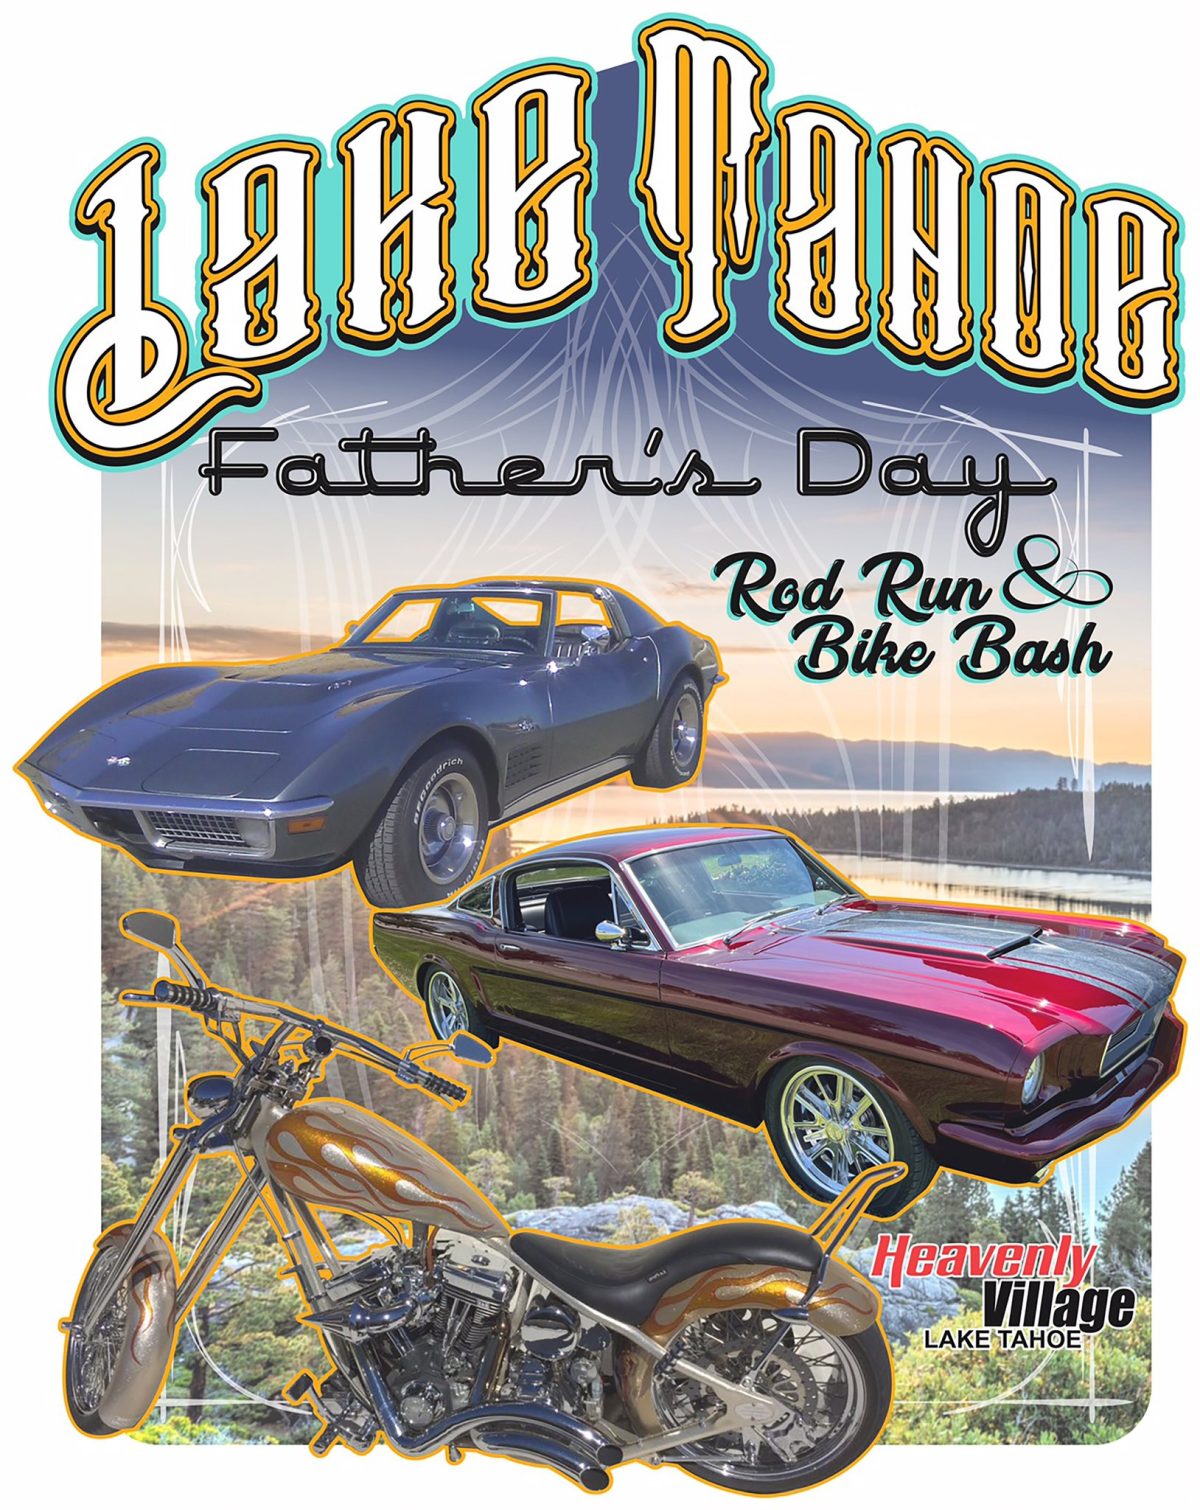 Father’s Day Rod Run & Bike Bash